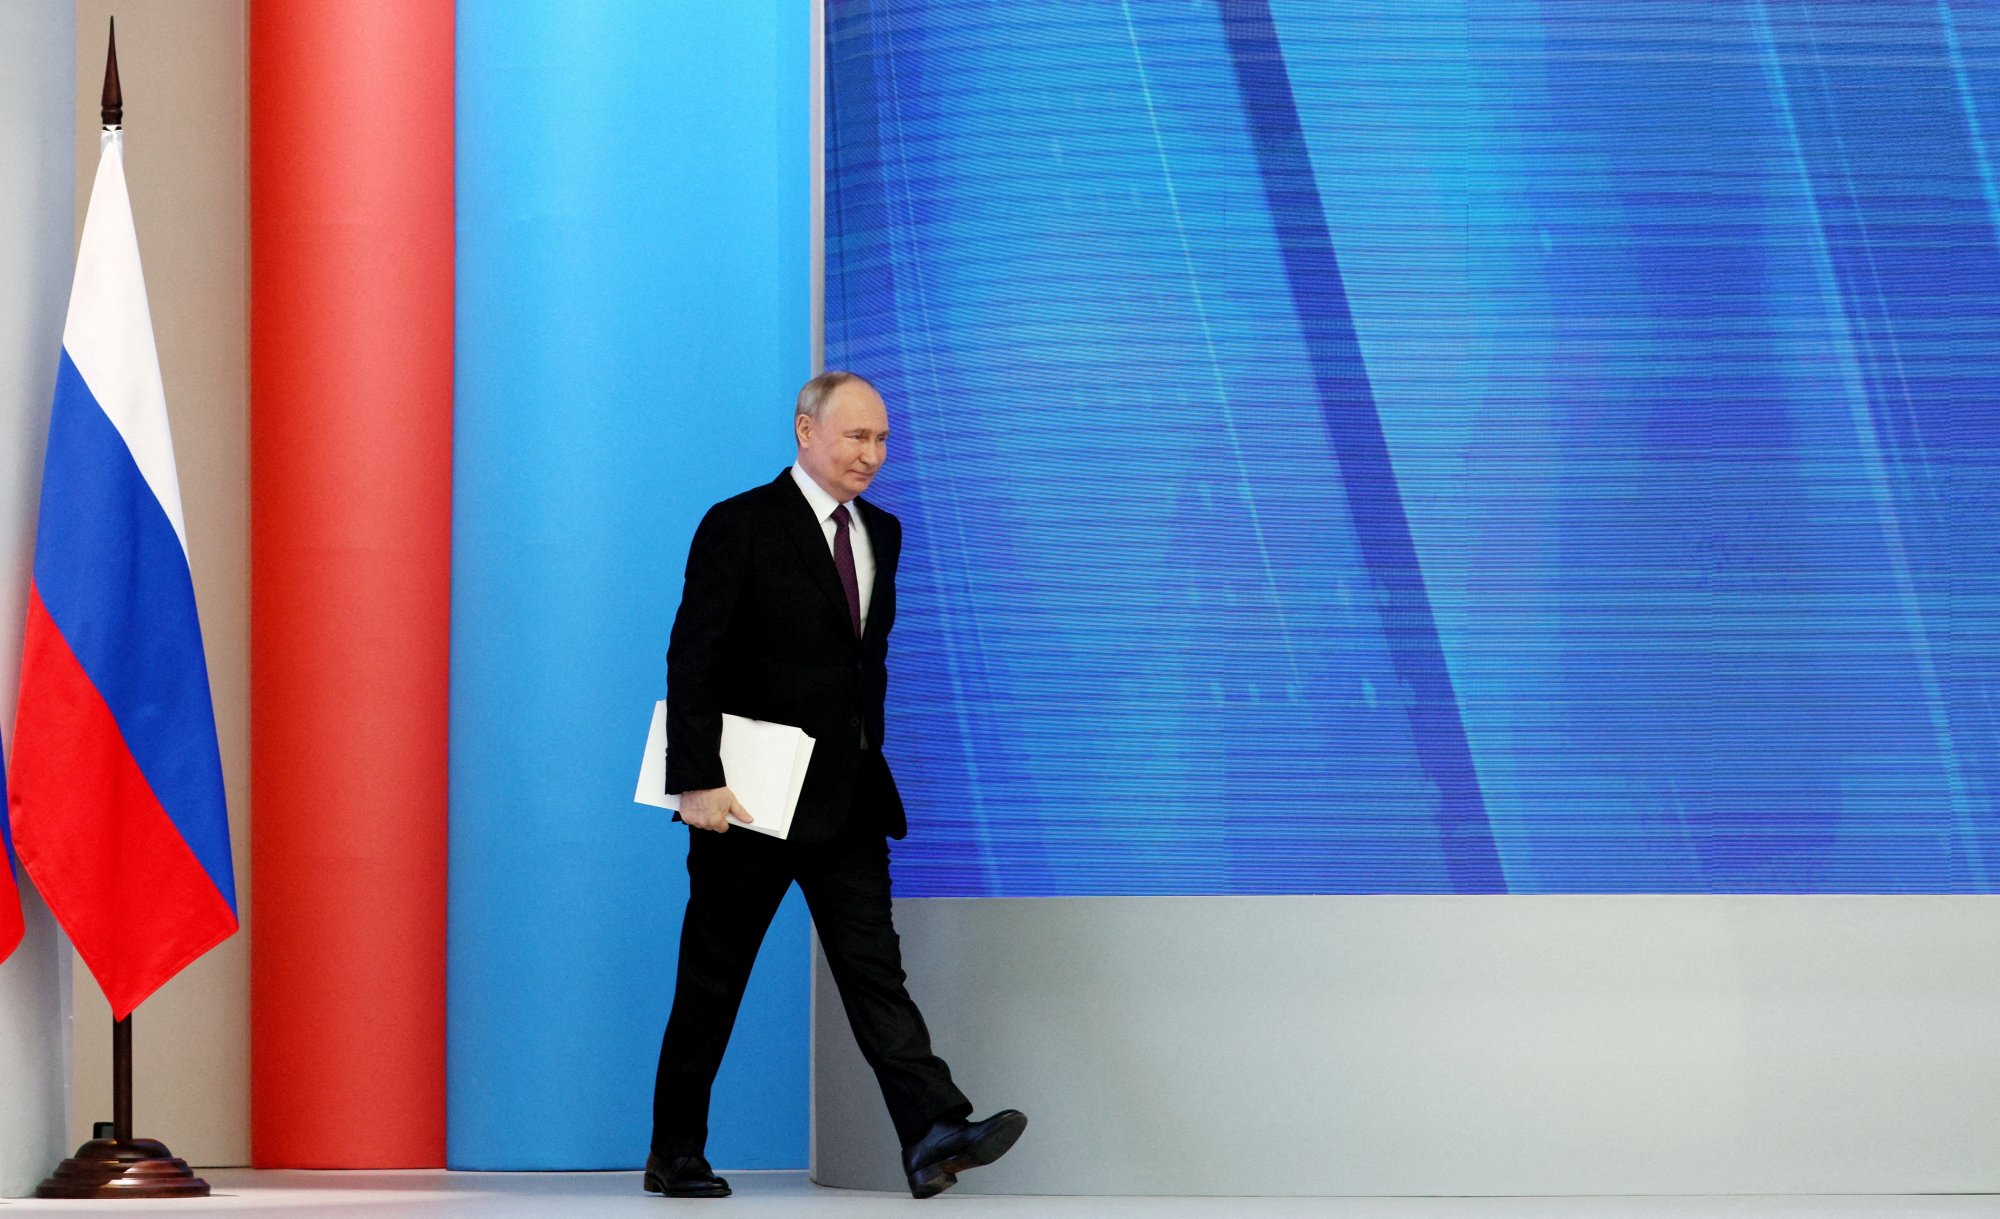 Εκλογές στη Ρωσία: Πρόεδρος της Ρωσίας ξανά ο Πούτιν